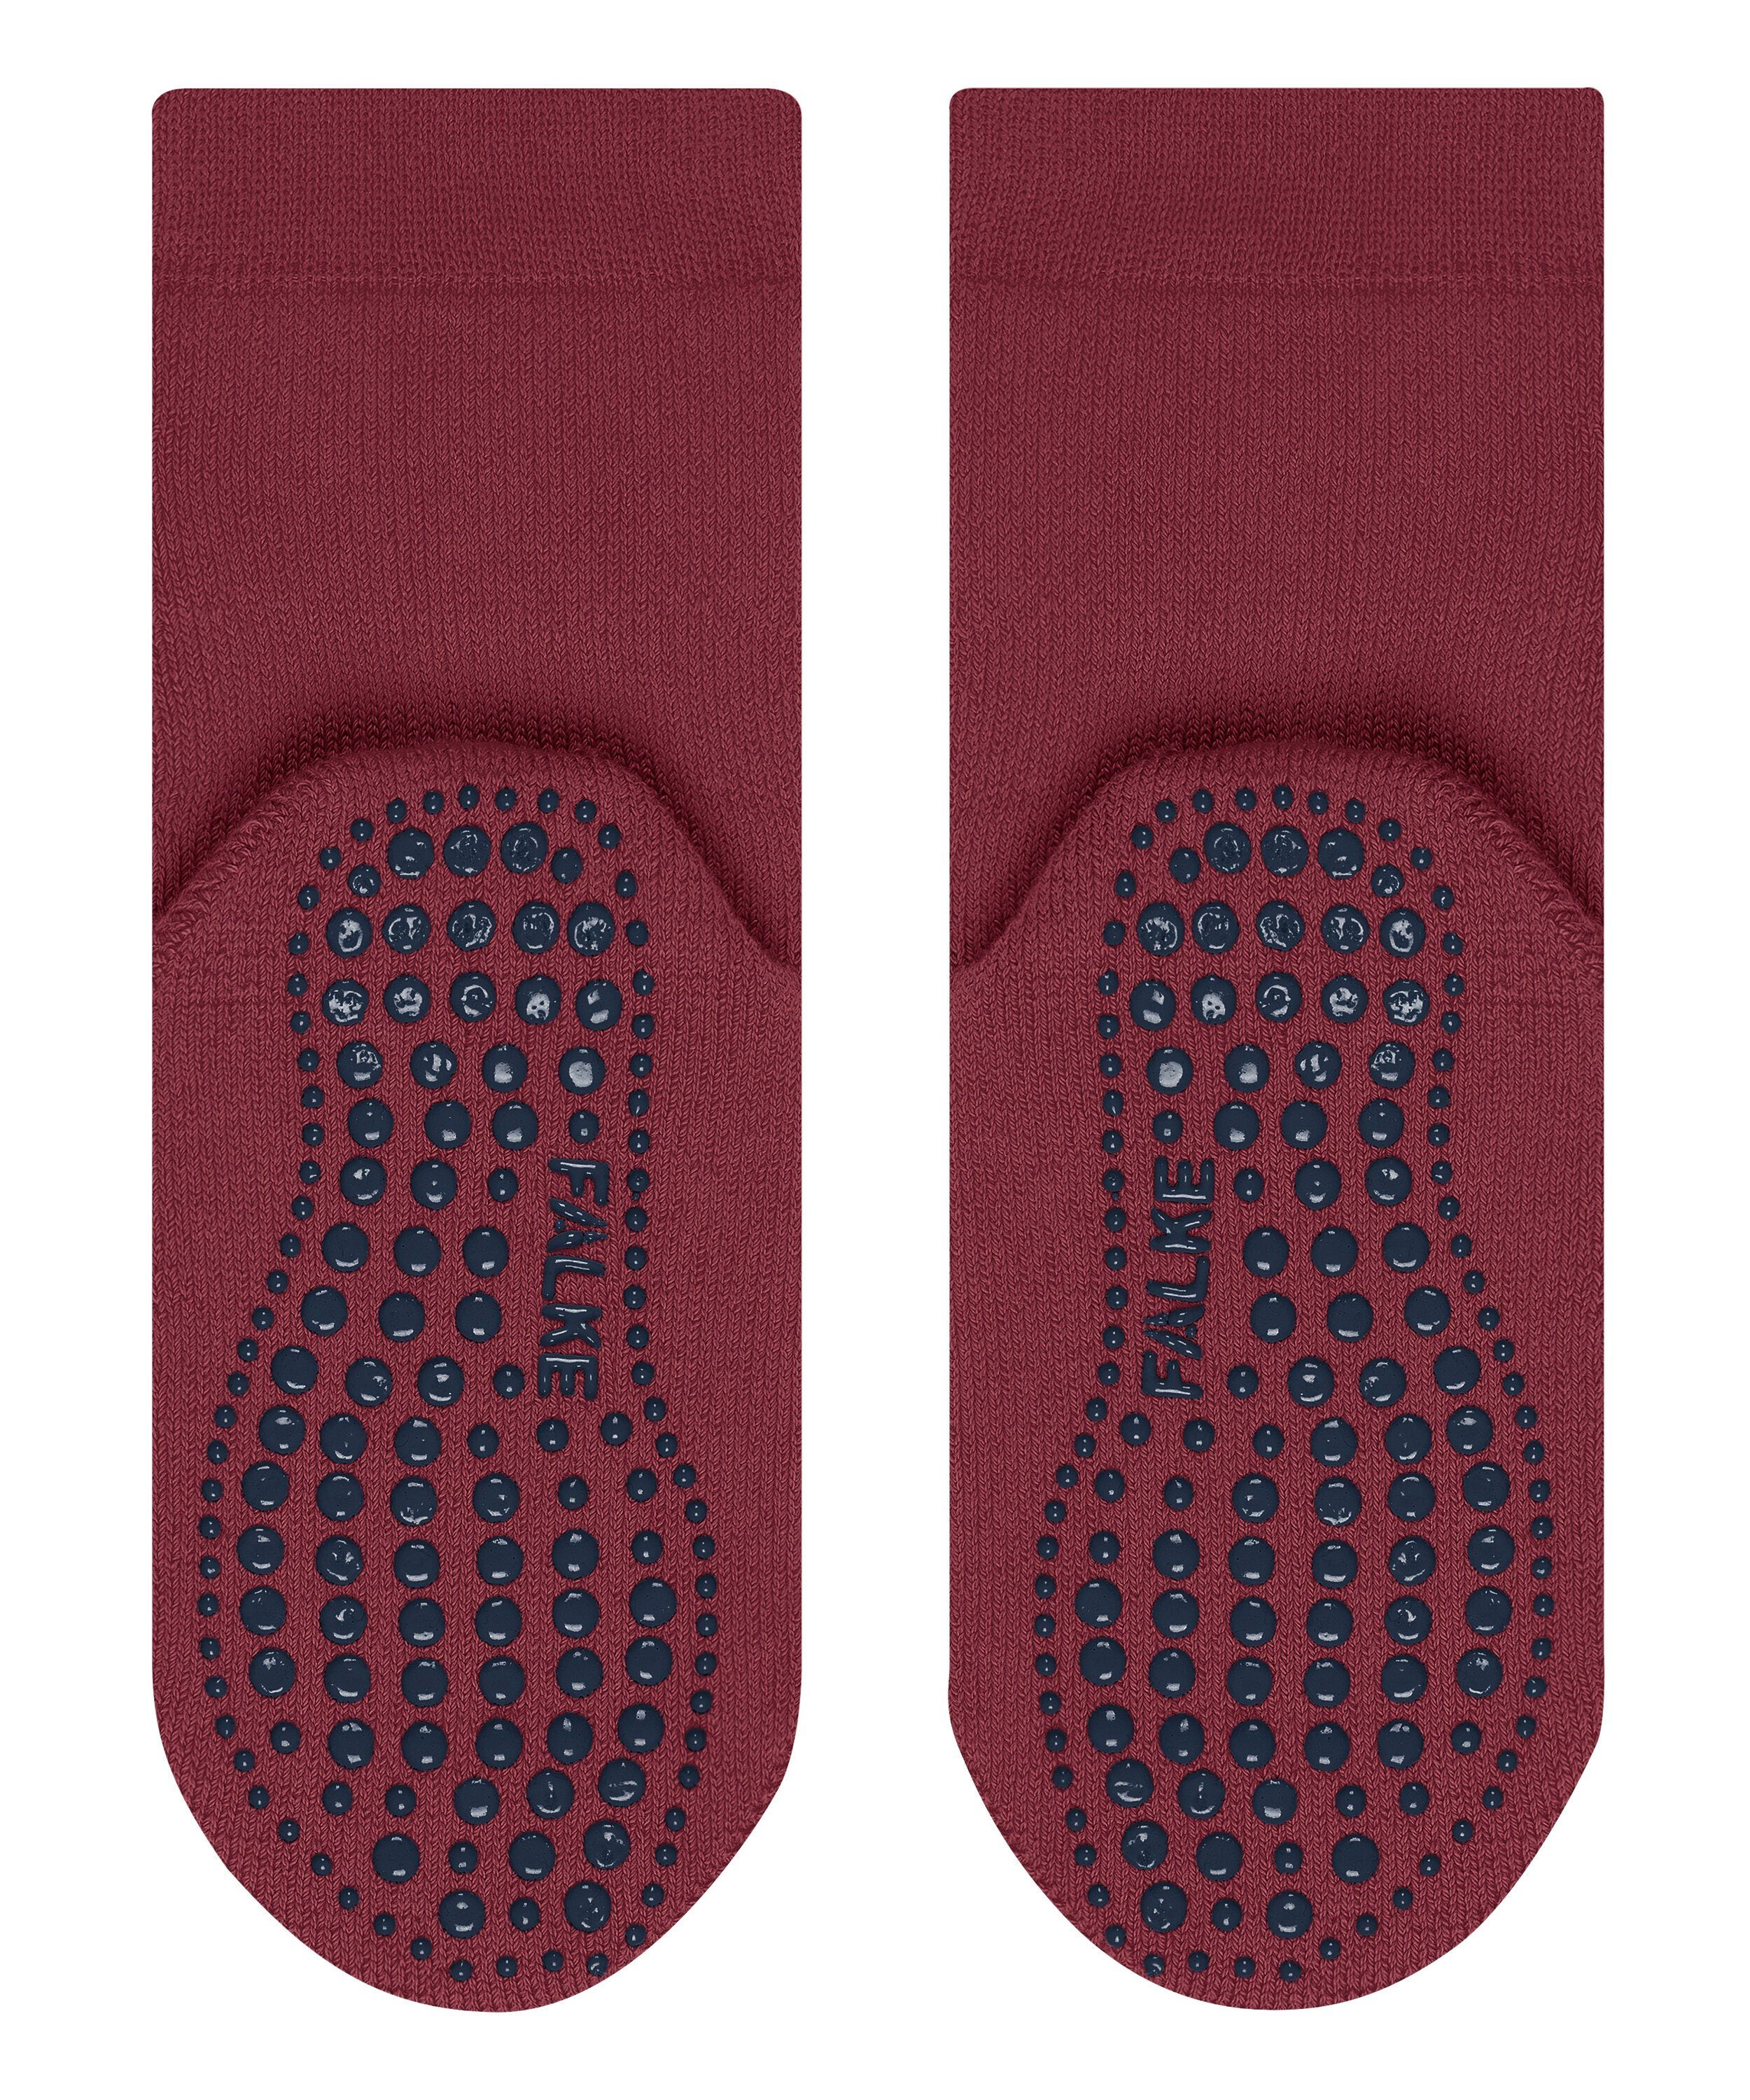 (1-Paar) Socken Catspads FALKE (8830) ruby